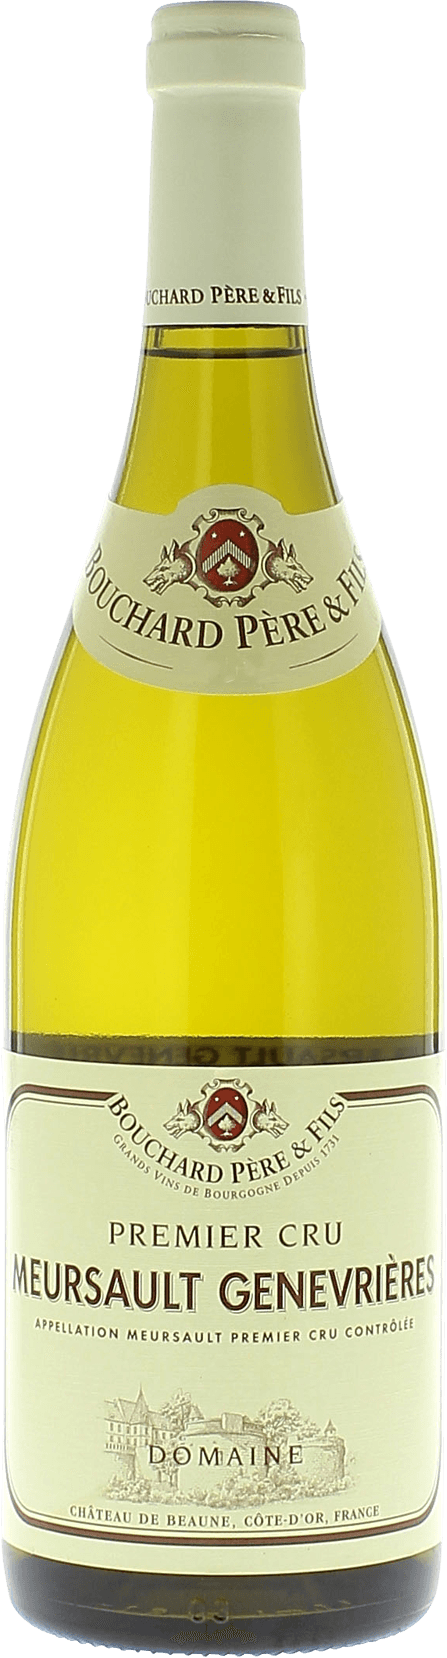 Meursault 1er cru genevrires 2016  BOUCHARD Pre et fils, Bourgogne blanc